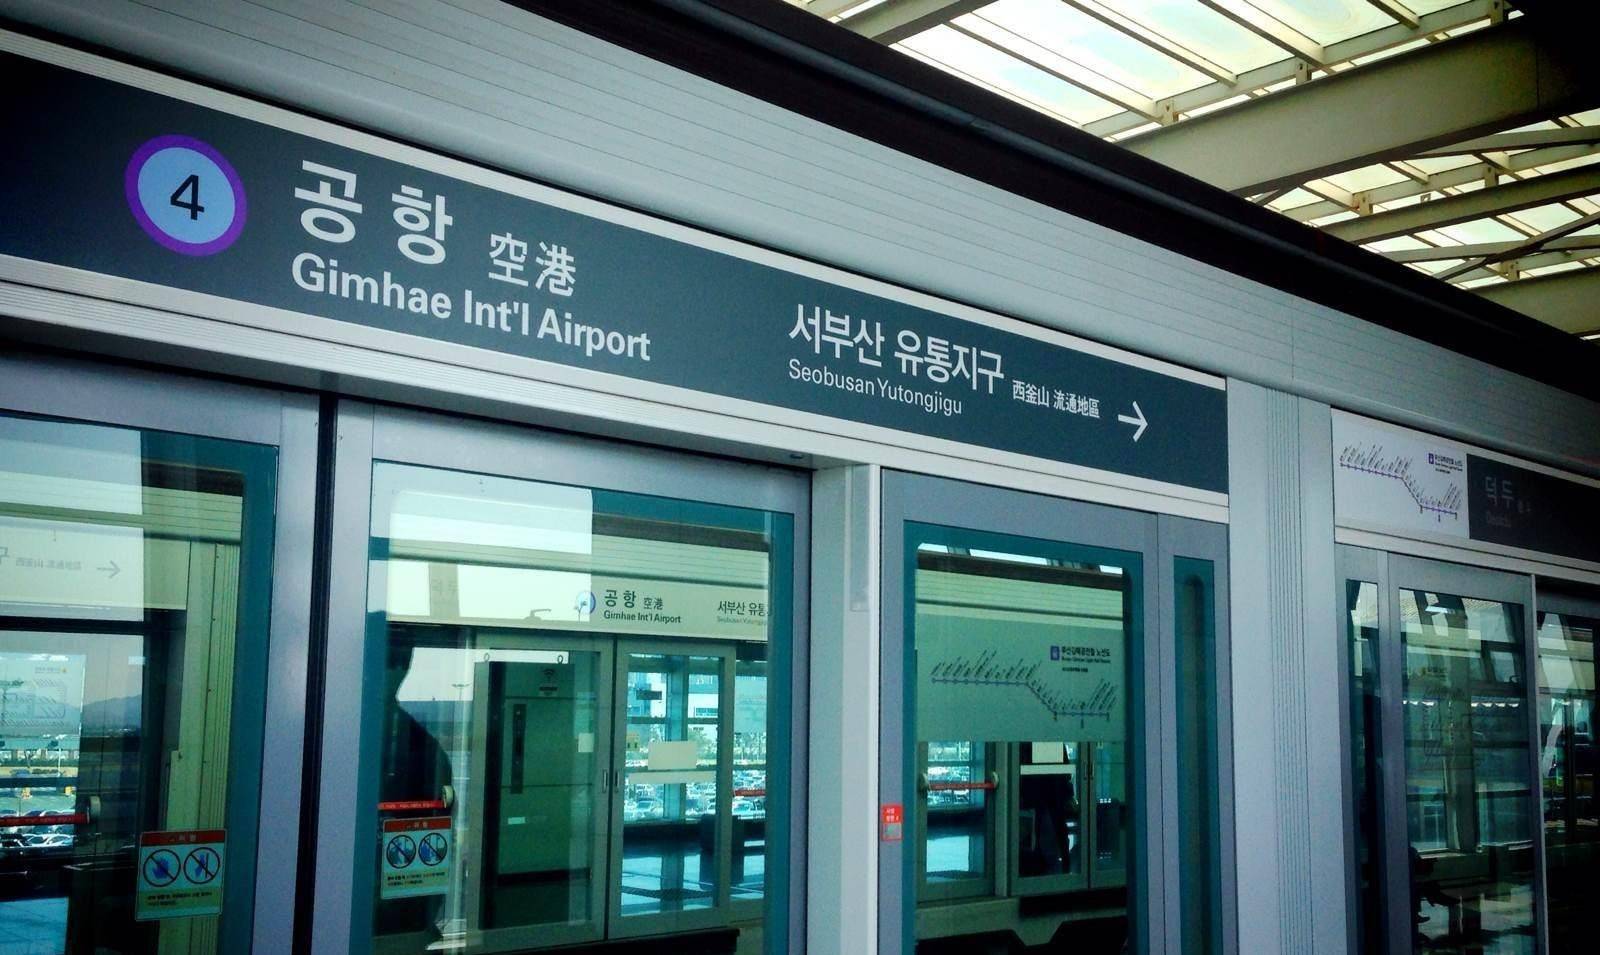 随着两个小时的航程即将结束,国航129号已经临近釜山金海机场,正在